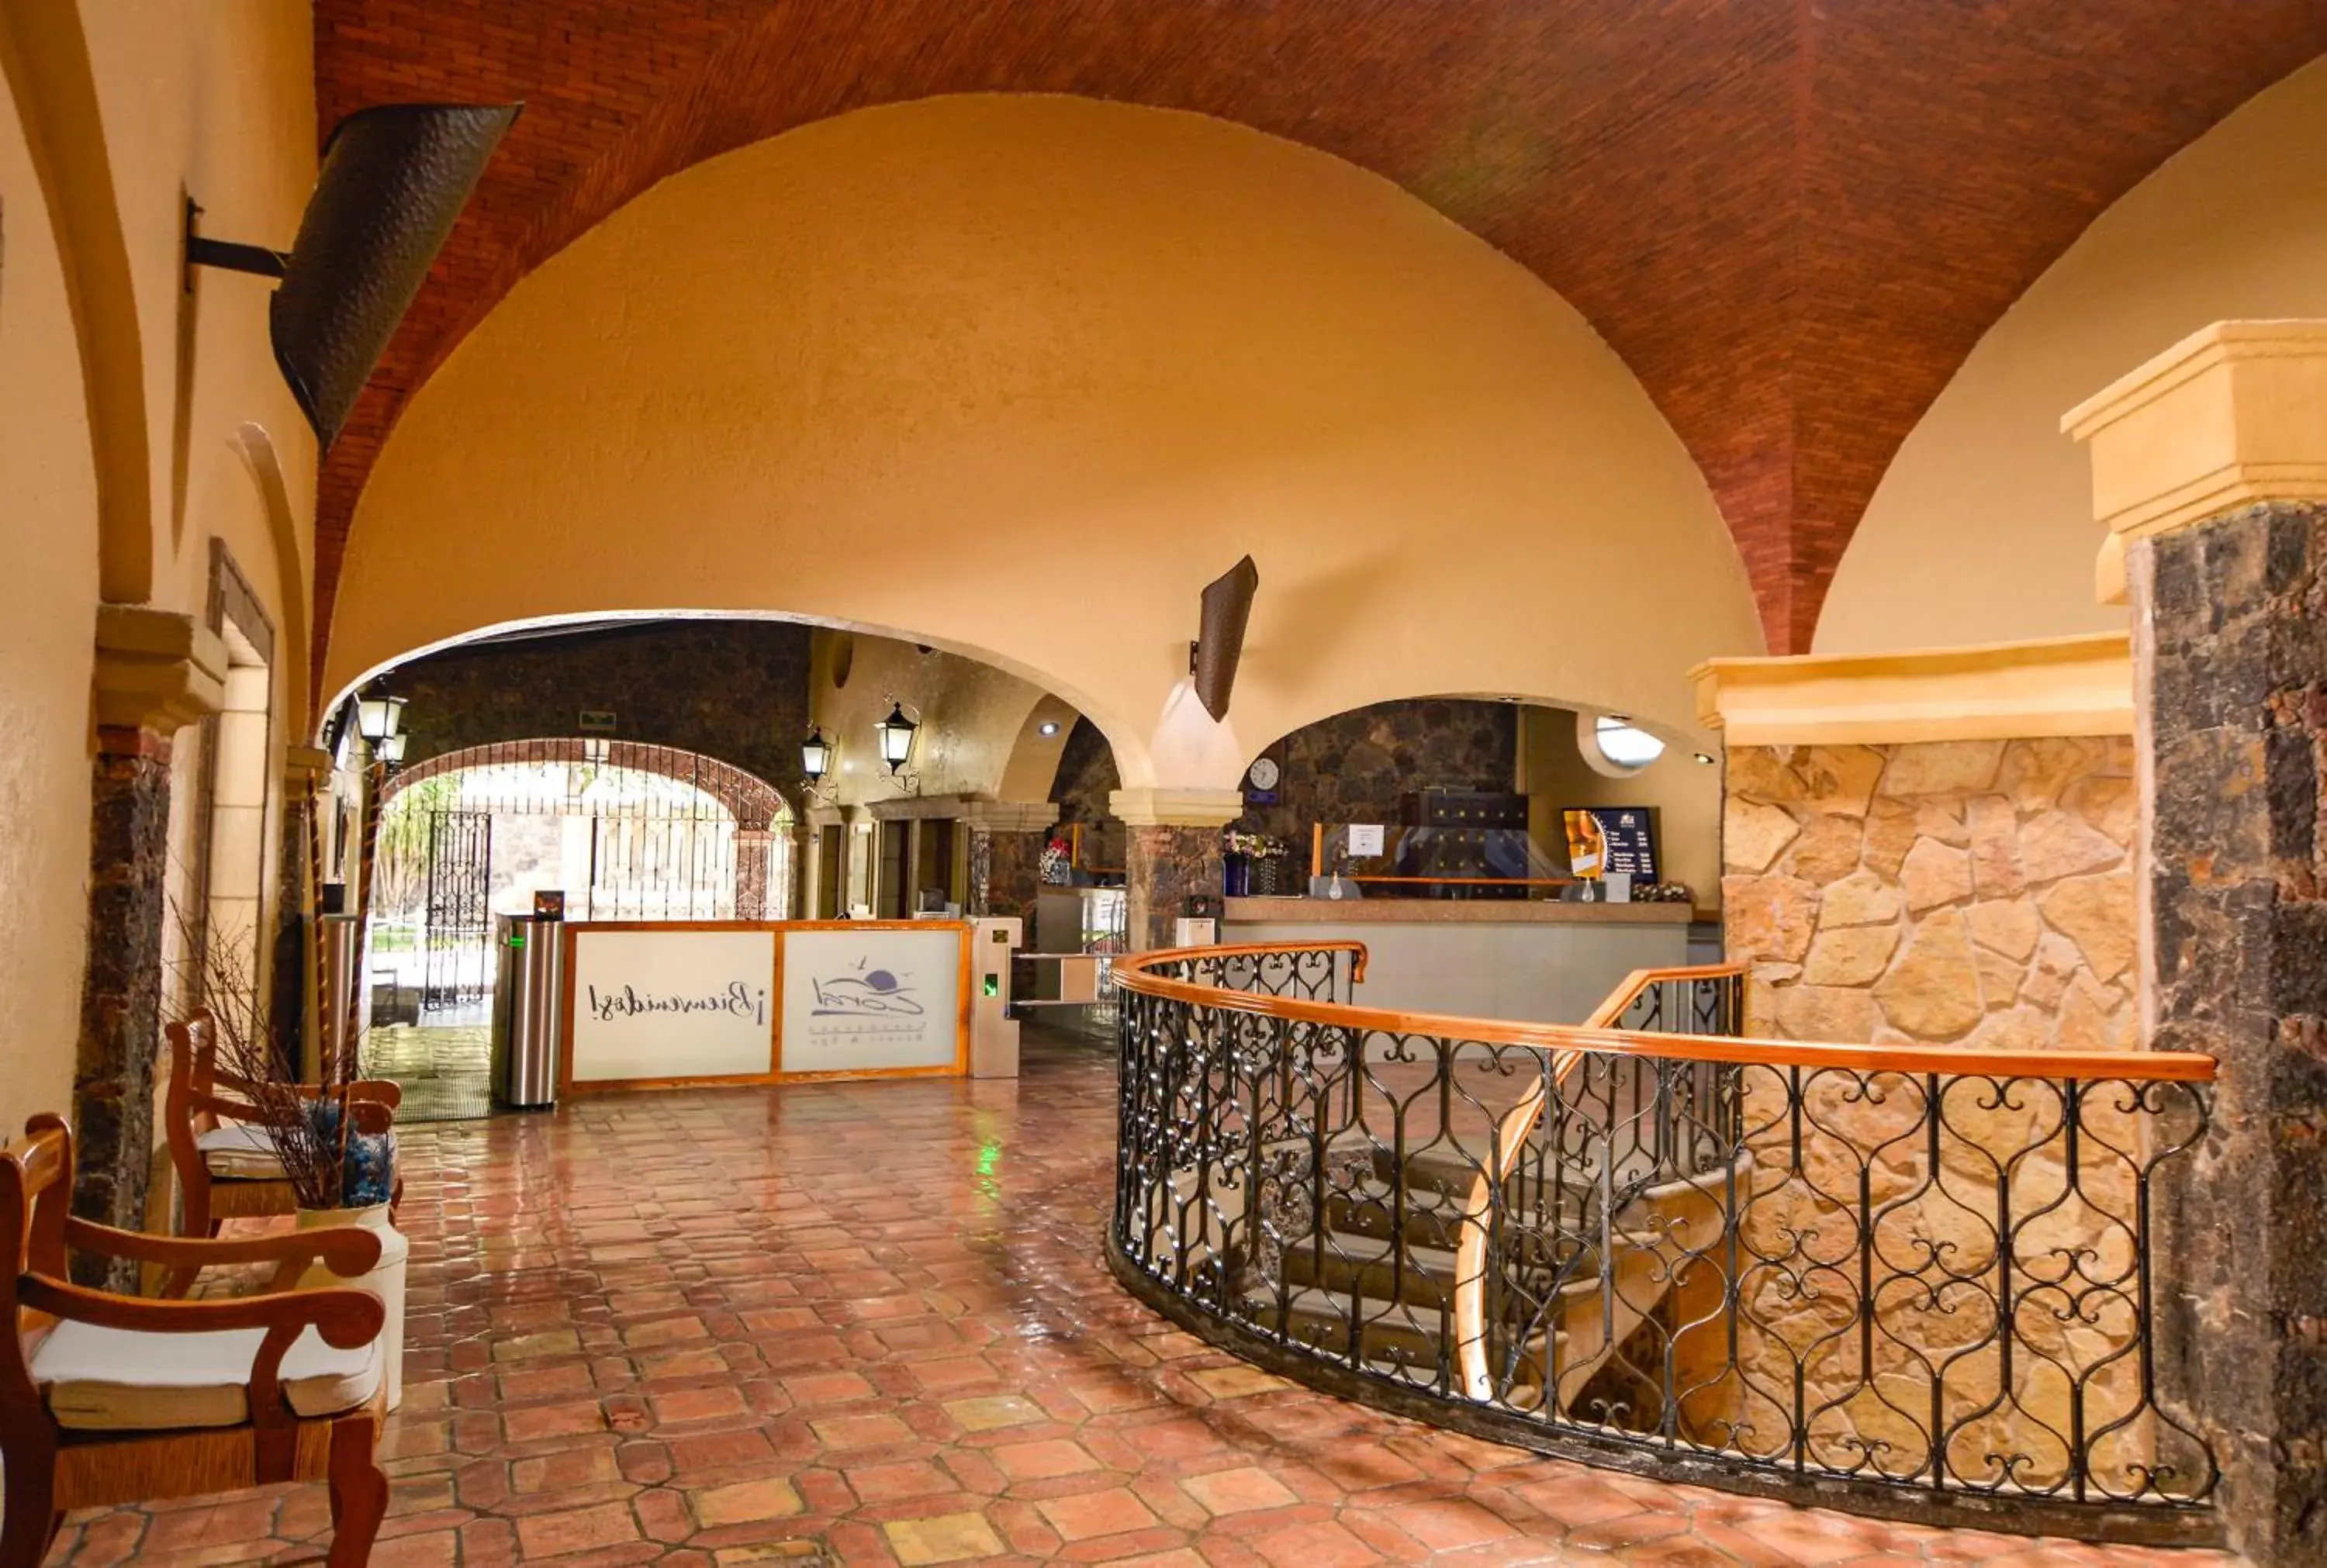 Lobby or reception, Lobby/Reception in Hotel Coral Cuernavaca Resort & Spa